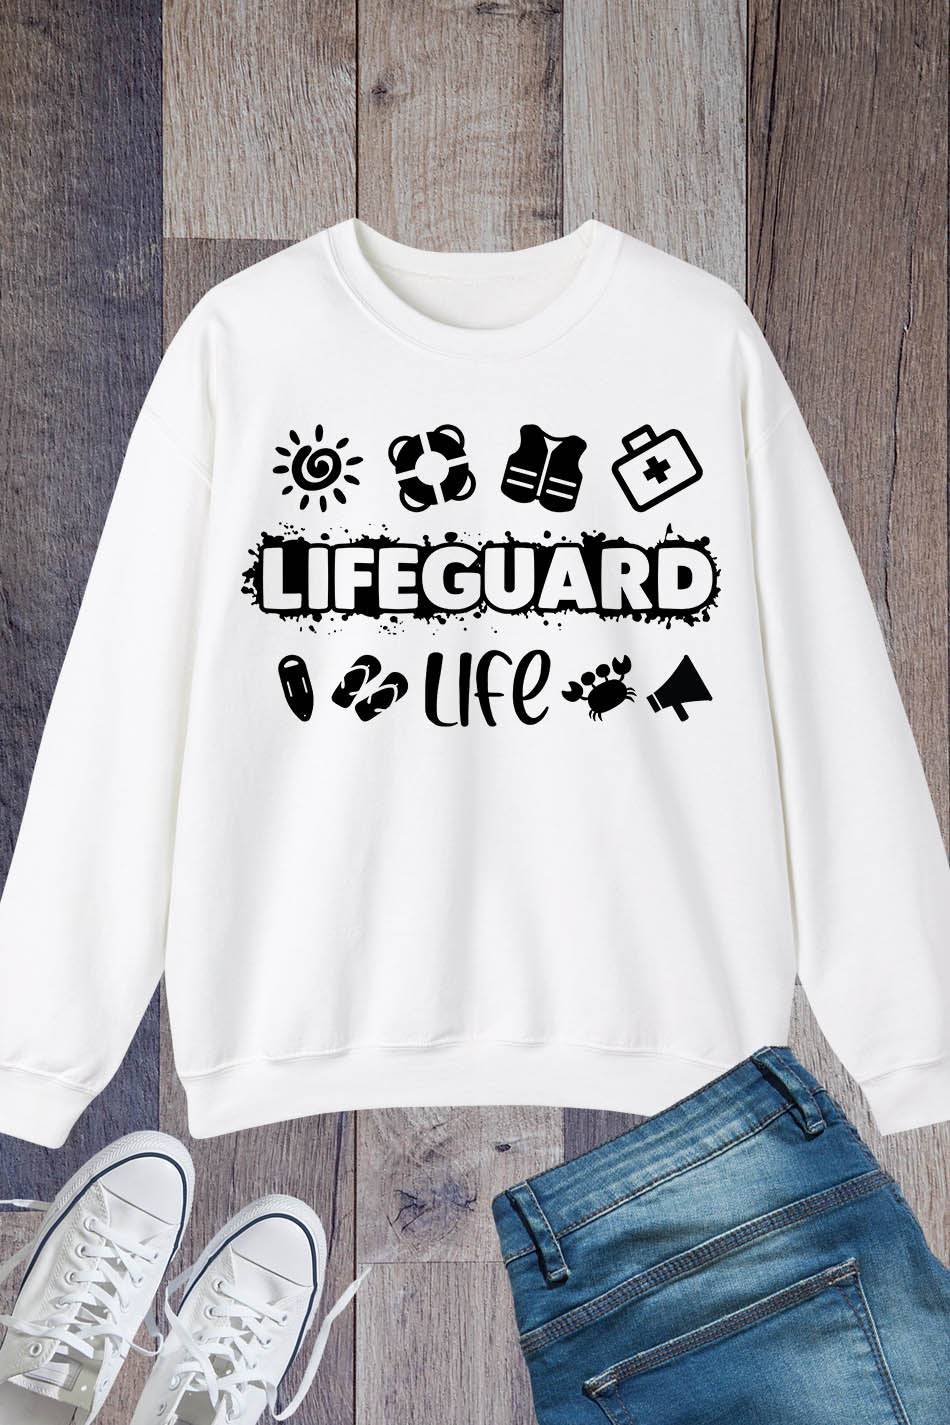 Lifeguard Life Sweatshirt